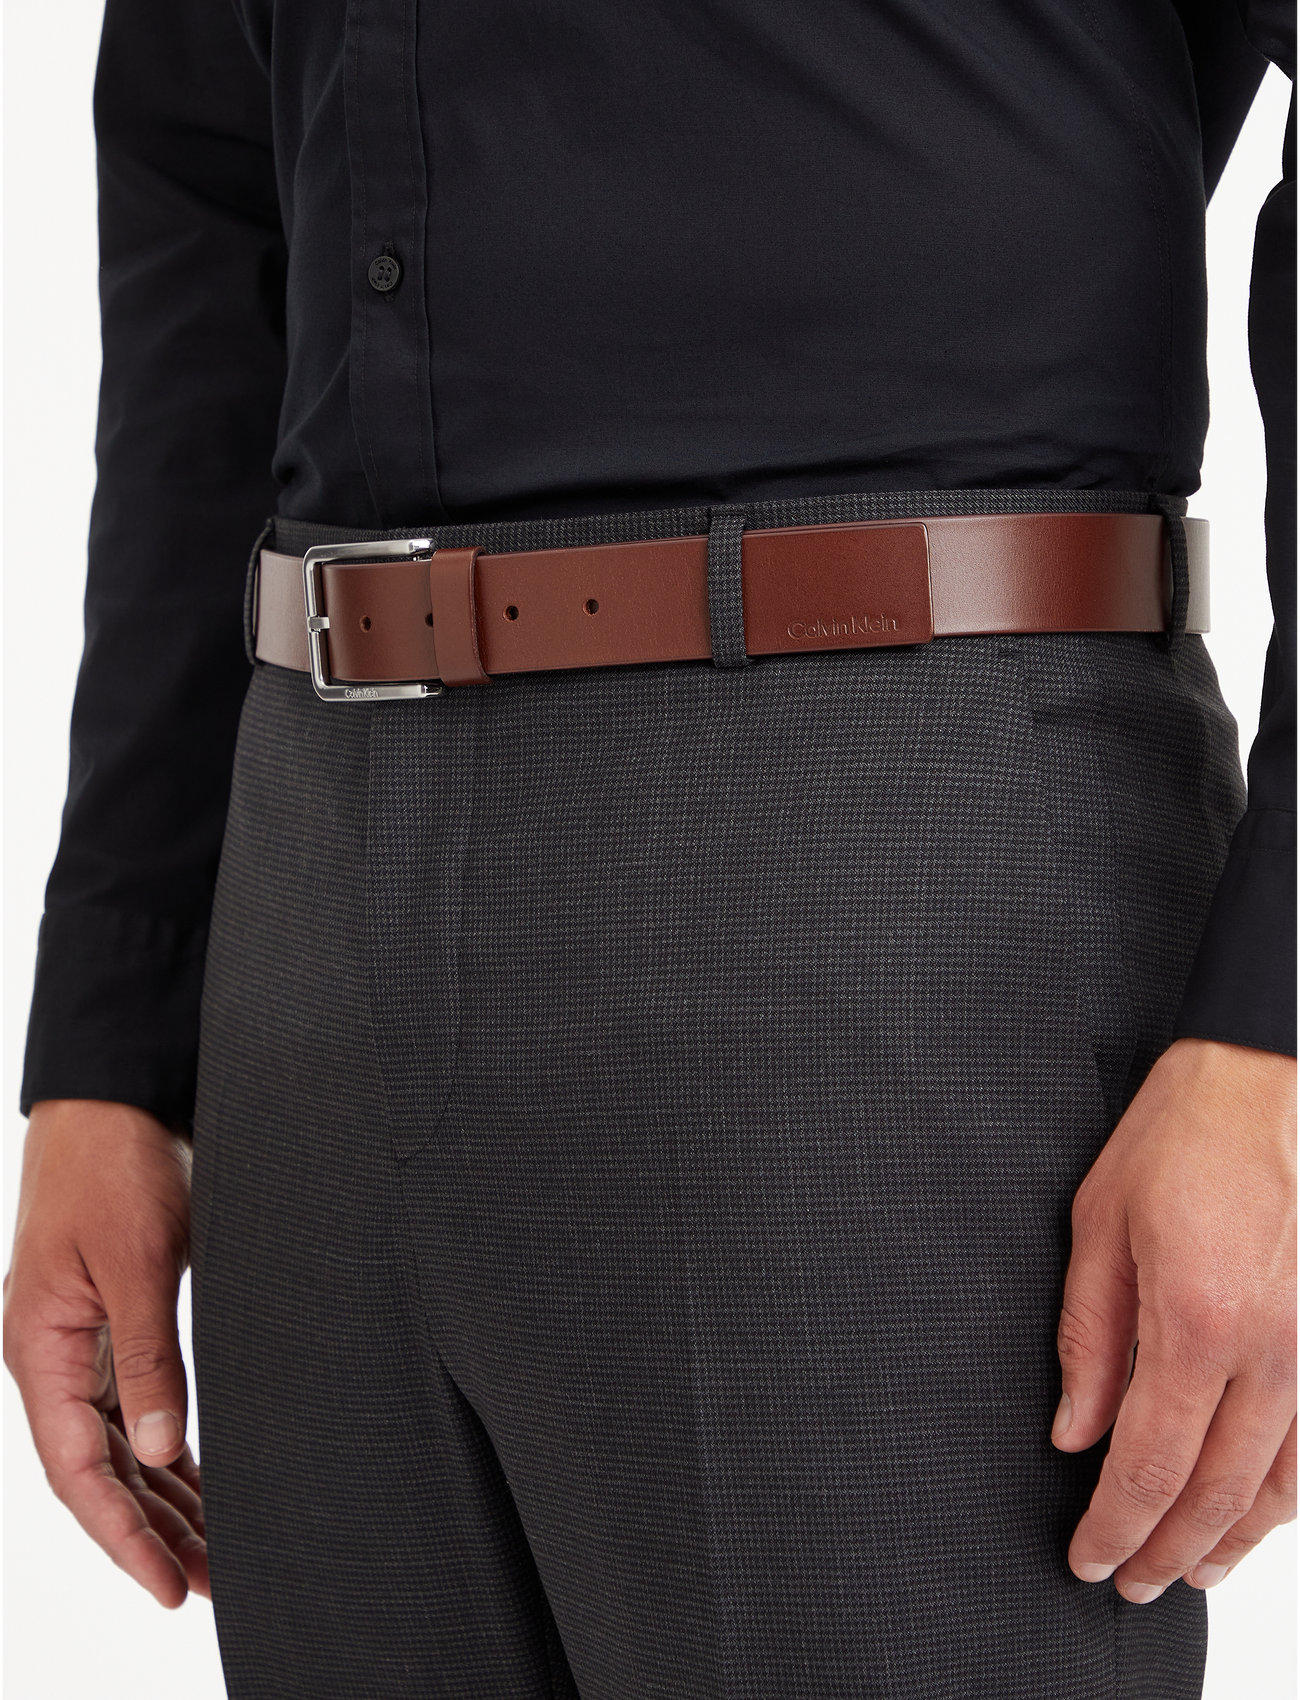 Calvin Klein Warmth Smooth 35mm - Belts